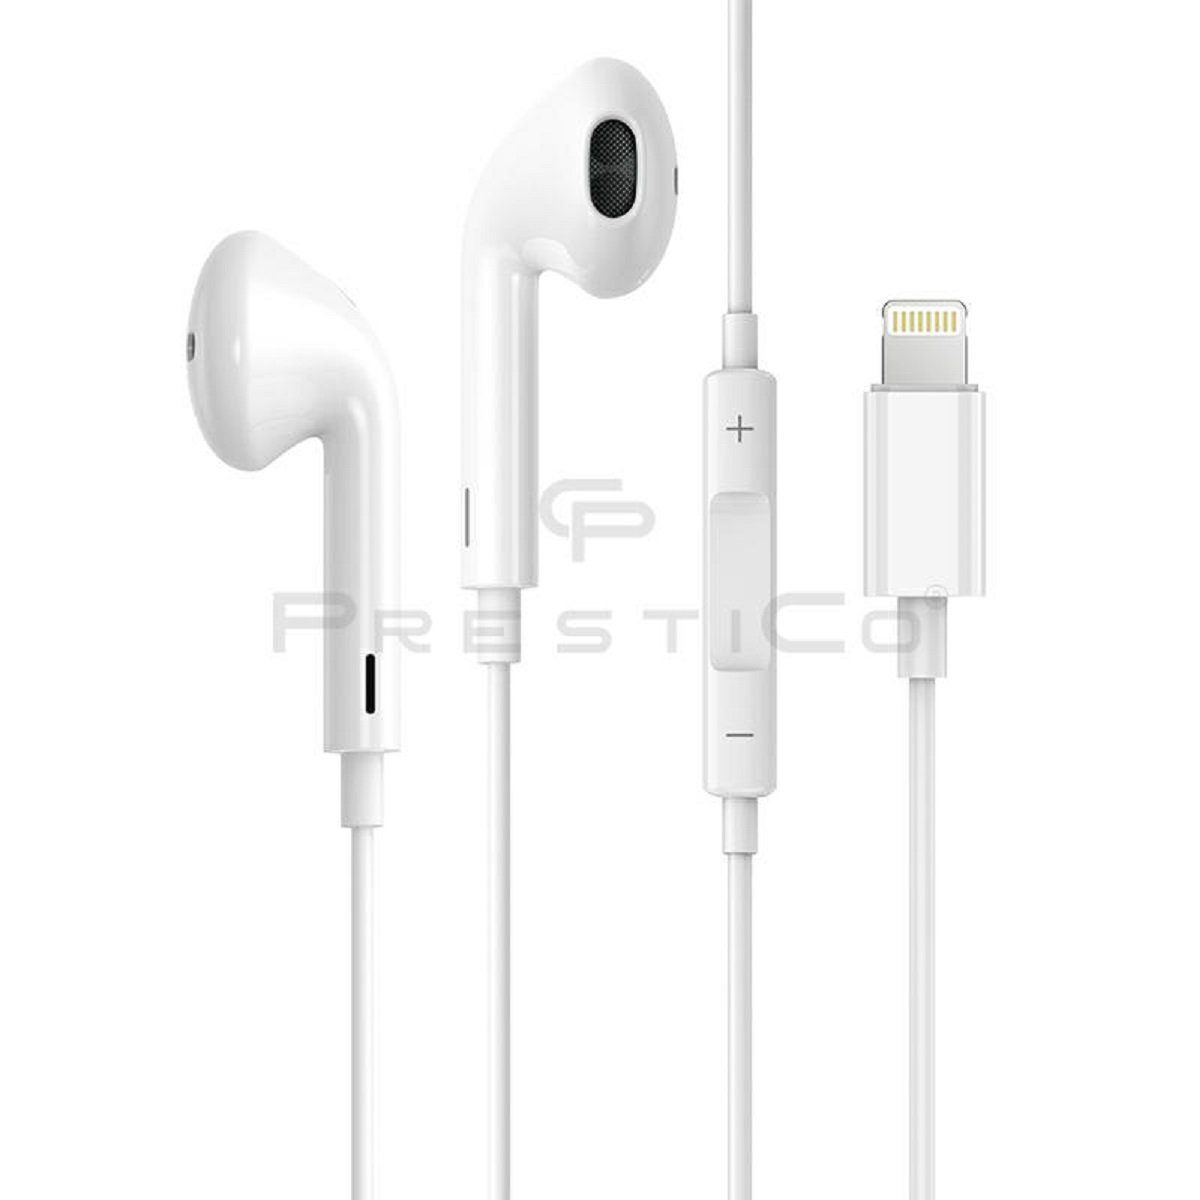 PrestiCo HF3 mit Lightning-Anschluss Kopfhörer Weiß In-Ear-Kopfhörer (Kabelgebunden, In-Ear-Kopfhörer, Intergrierte Steuerung für Anrufe und Musik, Lightning-Ohrhörer, Stereo-Kopfhörer, für iPhone Apple Earpods) | In-Ear-Kopfhörer